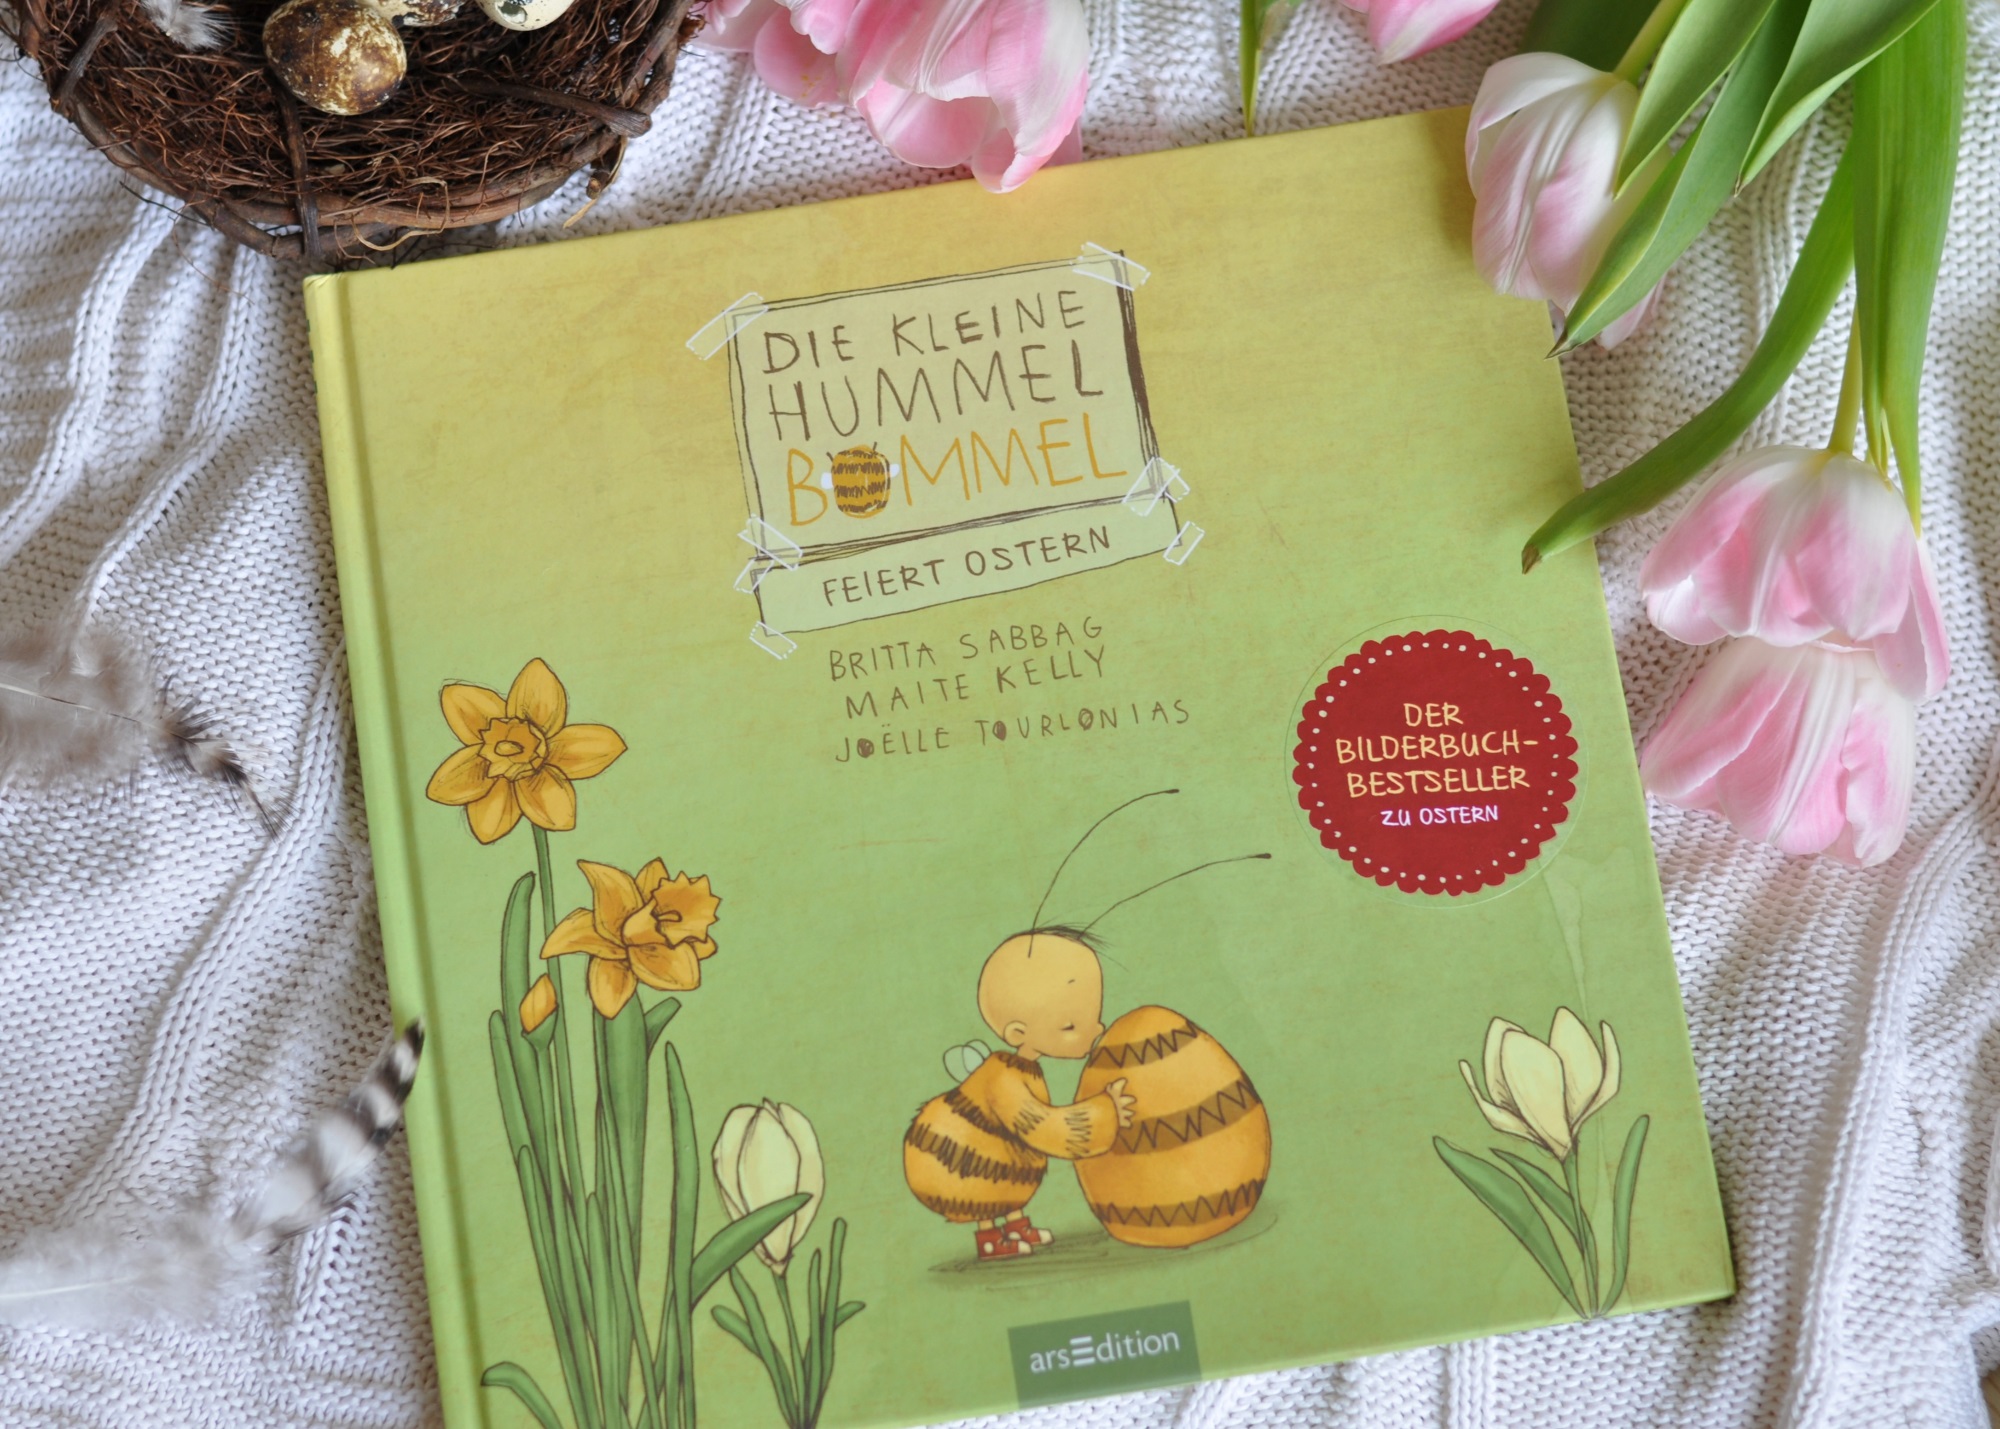 Die kleine Hummel Bommel feiert Ostern - Ein kribbelig schönes Osterfest #Kinderbuch #Bilderbuch #Ostern #Insekten